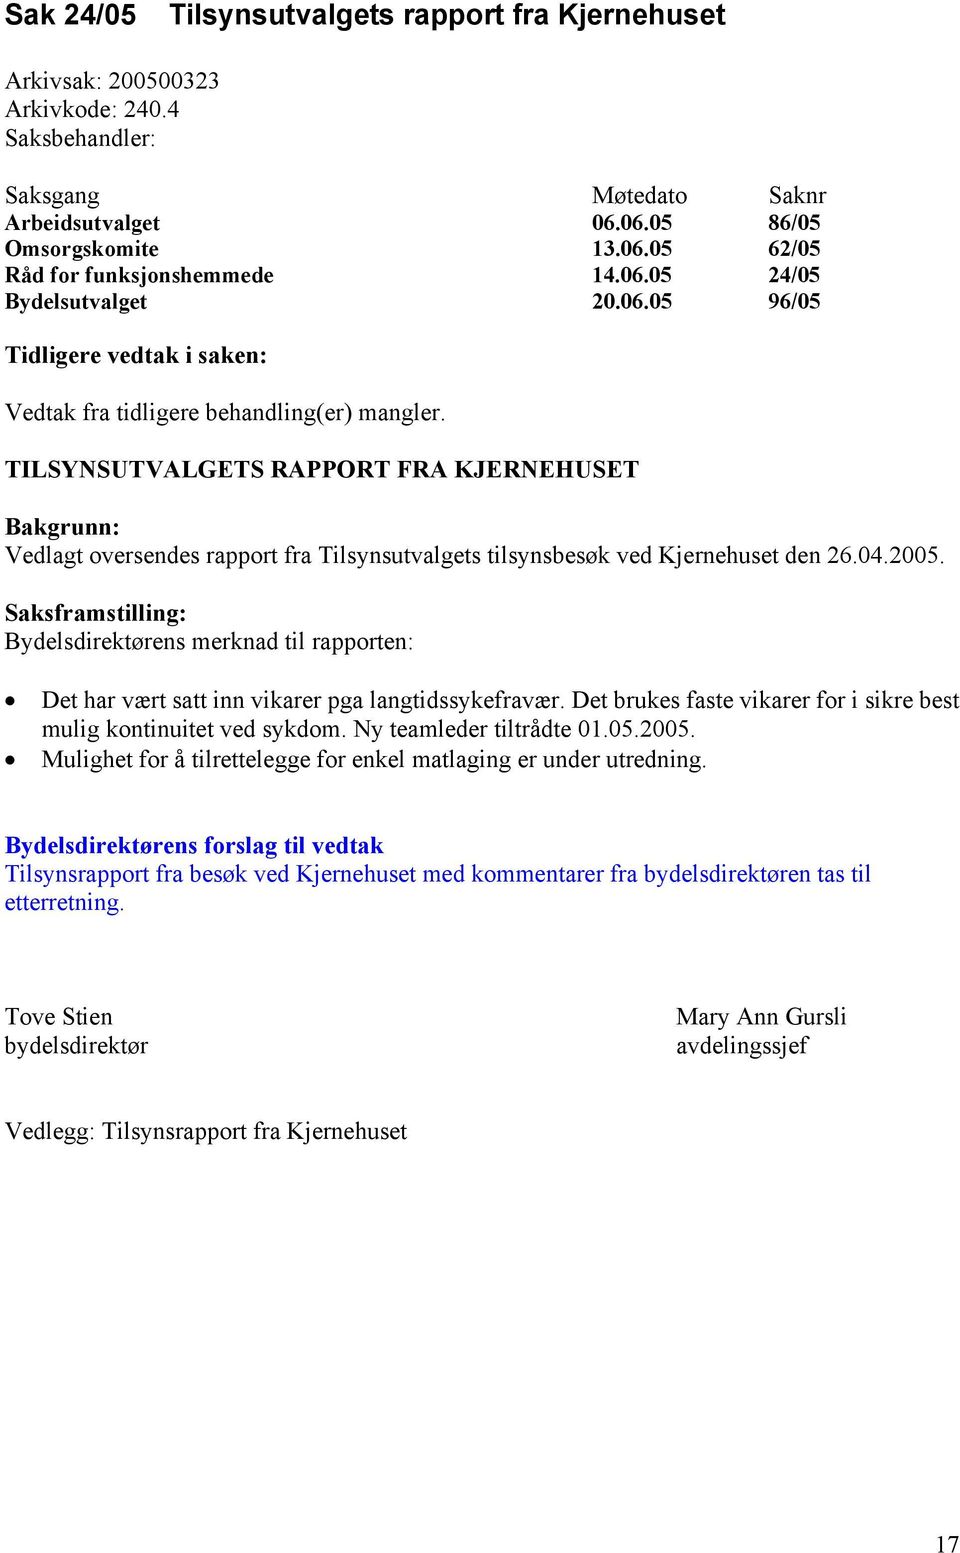 TILSYNSUTVALGETS RAPPORT FRA KJERNEHUSET Bakgrunn: Vedlagt oversendes rapport fra Tilsynsutvalgets tilsynsbesøk ved Kjernehuset den 26.04.2005.